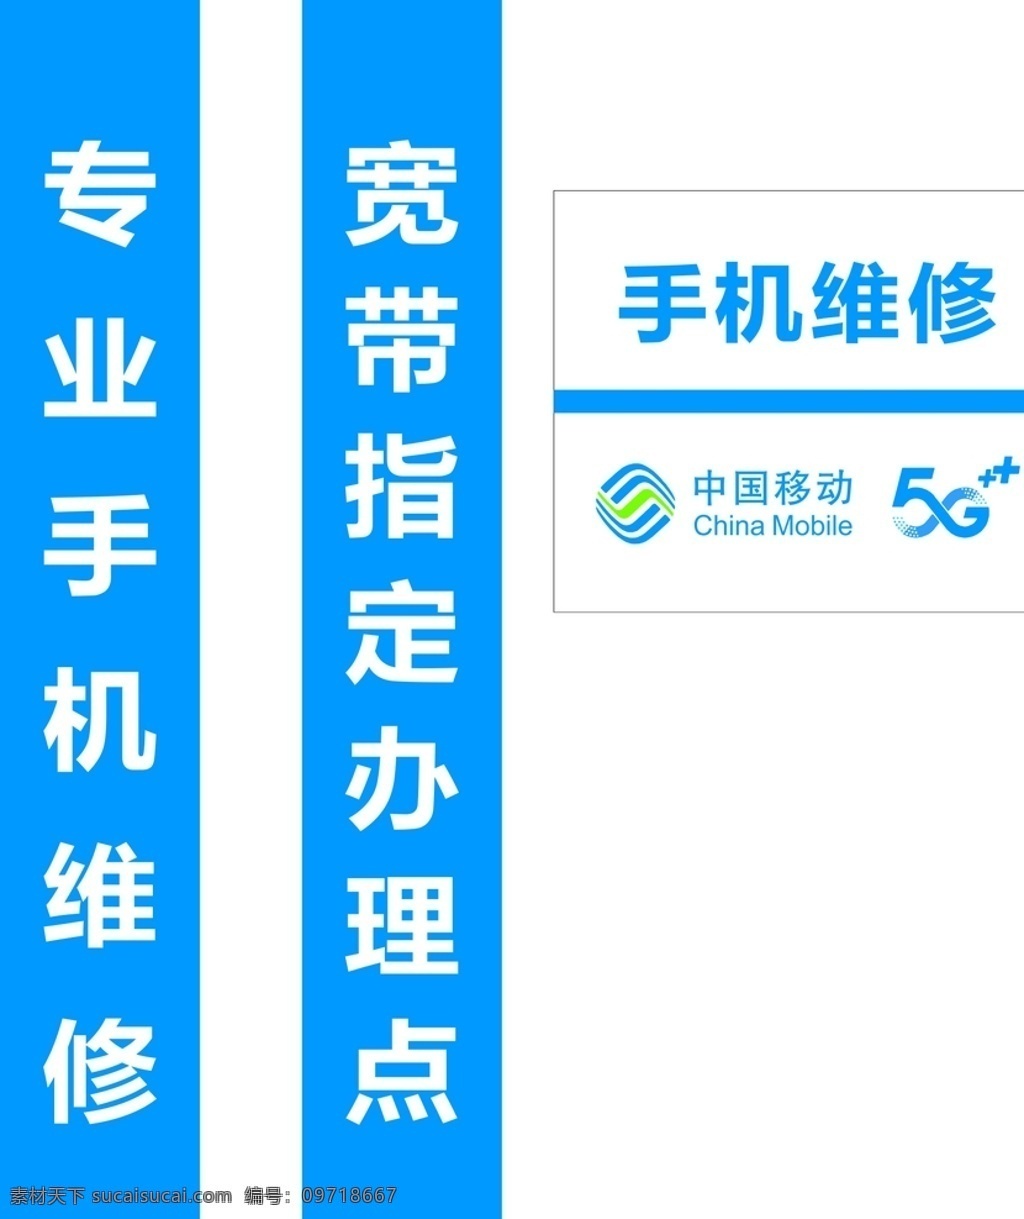 中国移动 logo 5g图片 5g 门柱 前台 logo设计